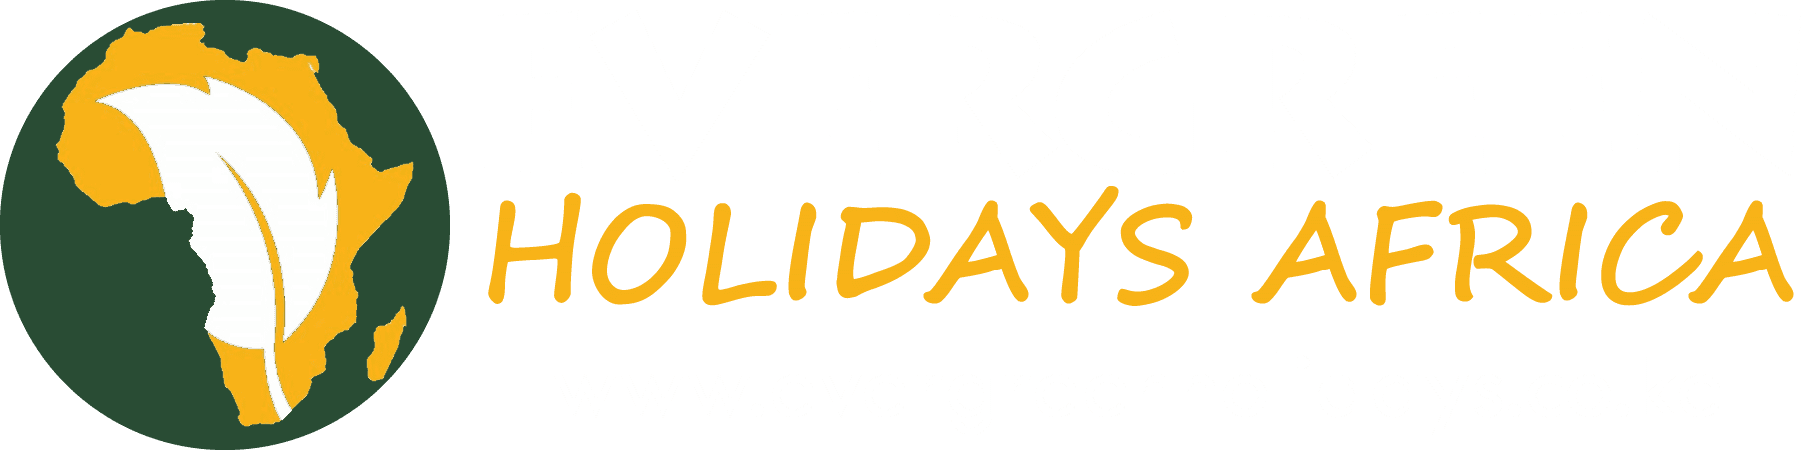 Evergreen Holidays